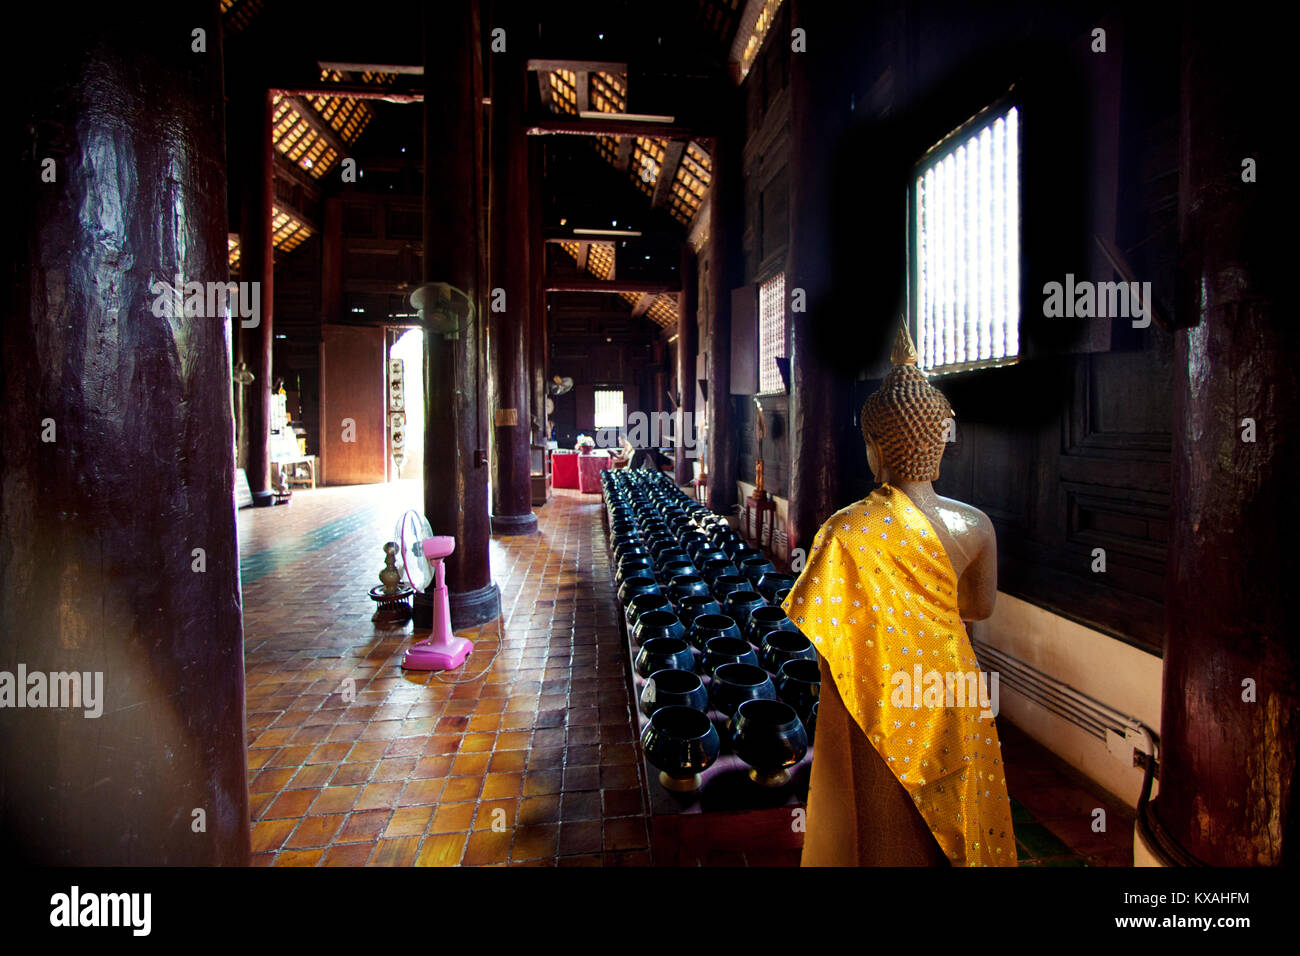 Ein Mönch ist das Studium in einem alten Tempel der Wat Phan Tao genannt. Dies ist einer der älteren Tempel von Chiang Mai fand im historischen Zentrum der Stadt. Alle dieser alten Tempel ist aus Teakholz. Chiang Mai, Thailand Stockfoto